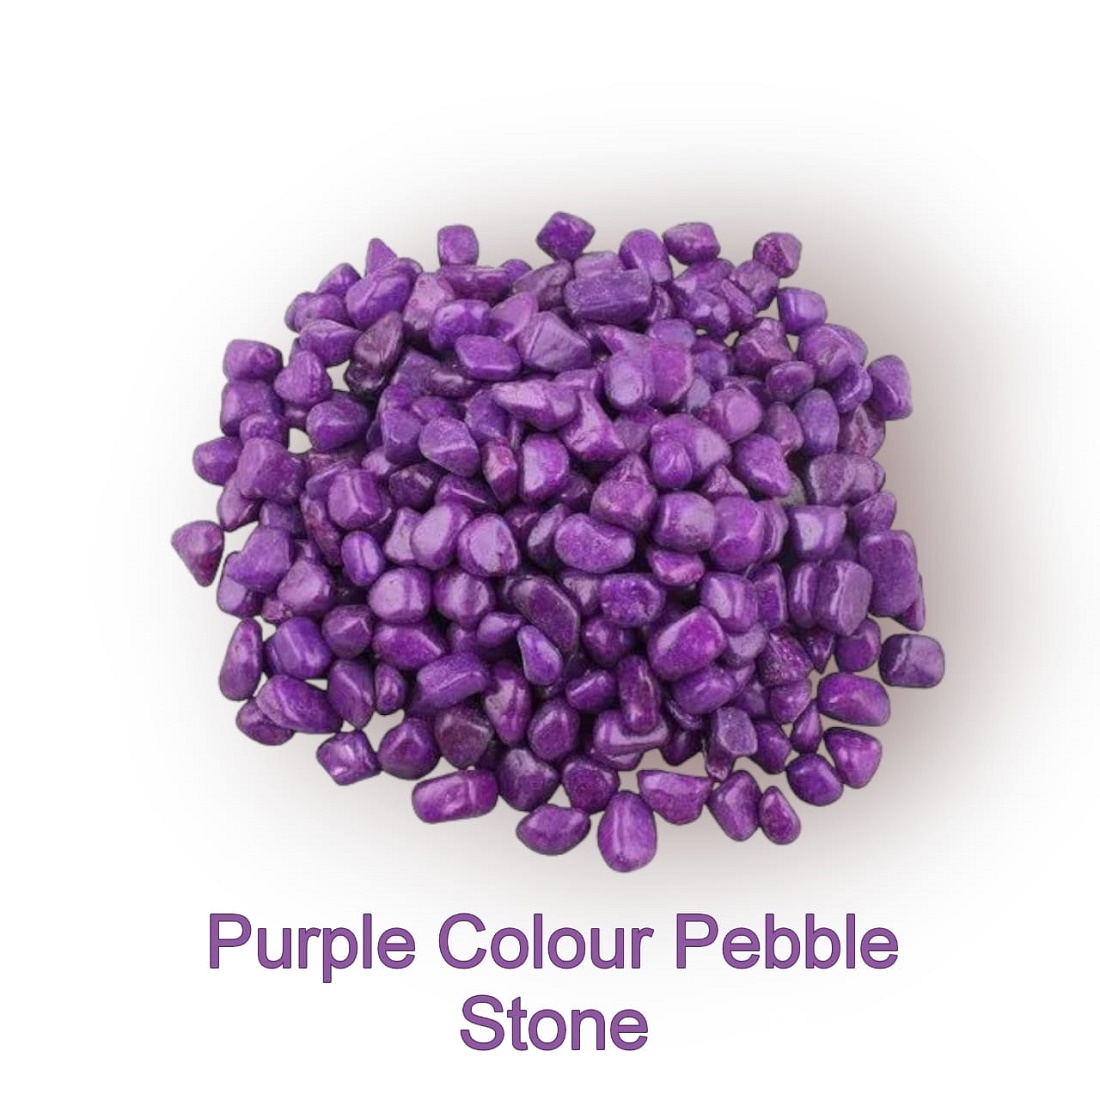 Stone Marble Pebbles for Home Garden Aquarium Outdoor Decoration (2 KG, Purple)